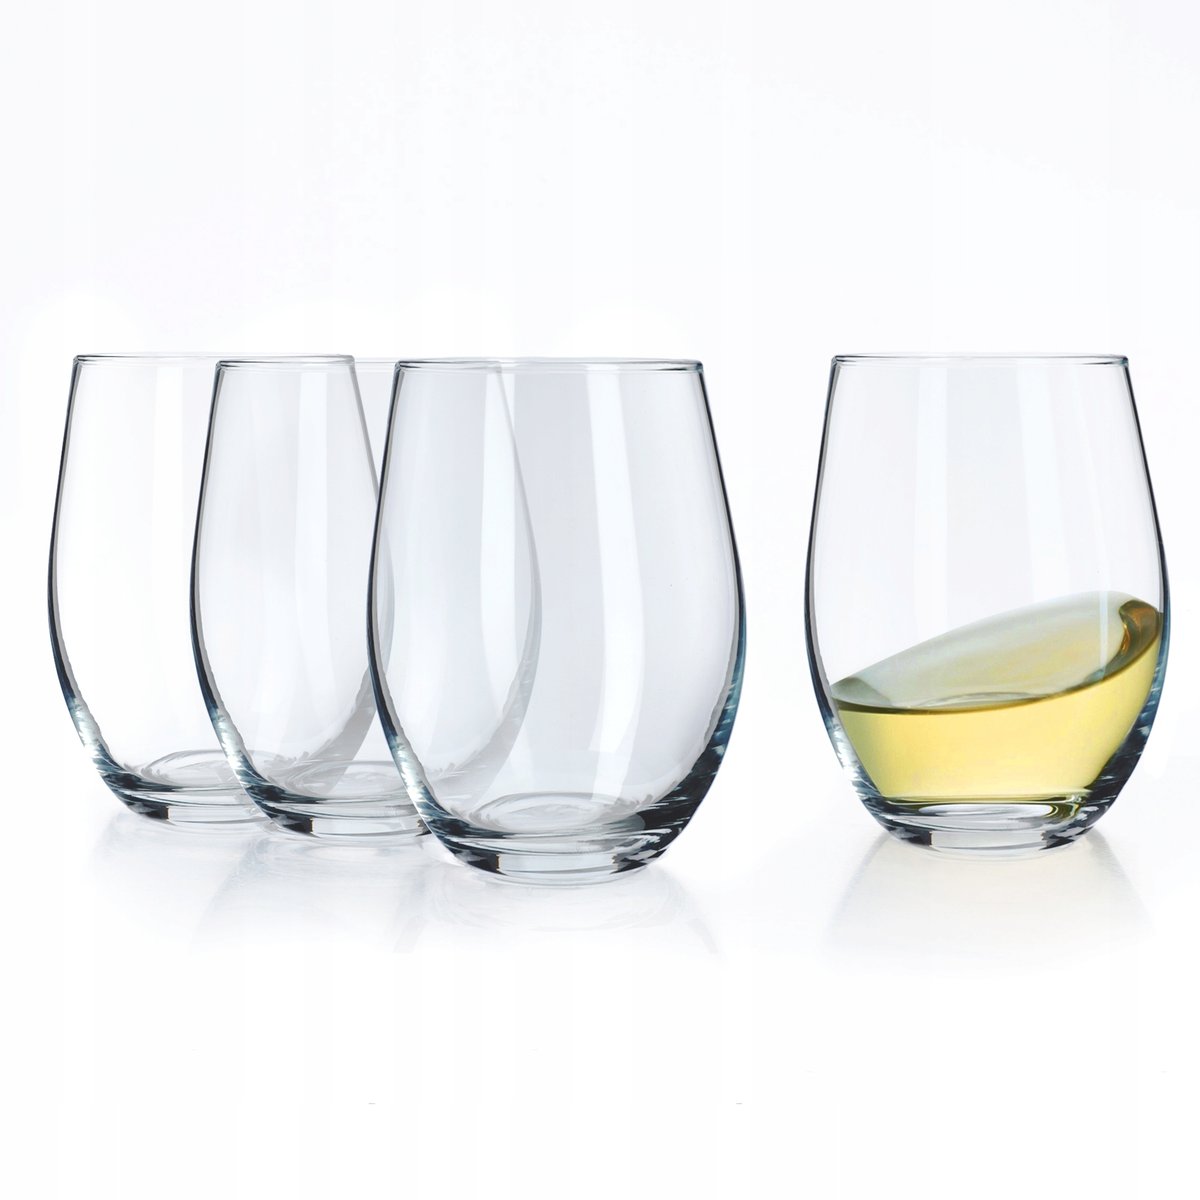 Szklanki do zimnych napojów i wina Stilo 580 ml, 4 szt.